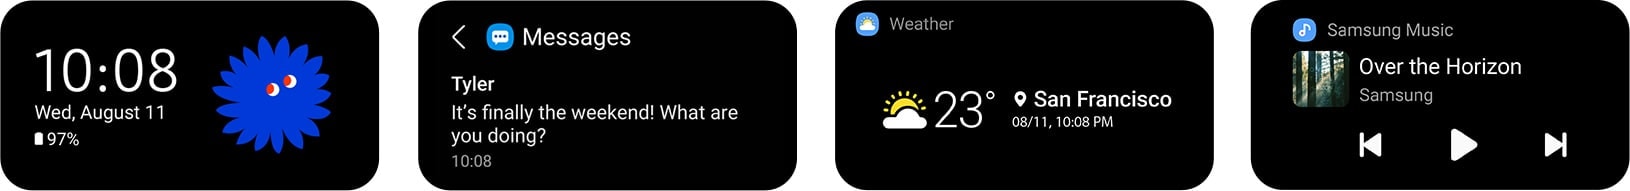 Màn hình ngoài trên Galaxy Z Flip3 5G với Các tùy chọn hiển thị gồm thông báo Tin nhắn từ Tyler, điều khiển Thời tiết và Samsung Music.